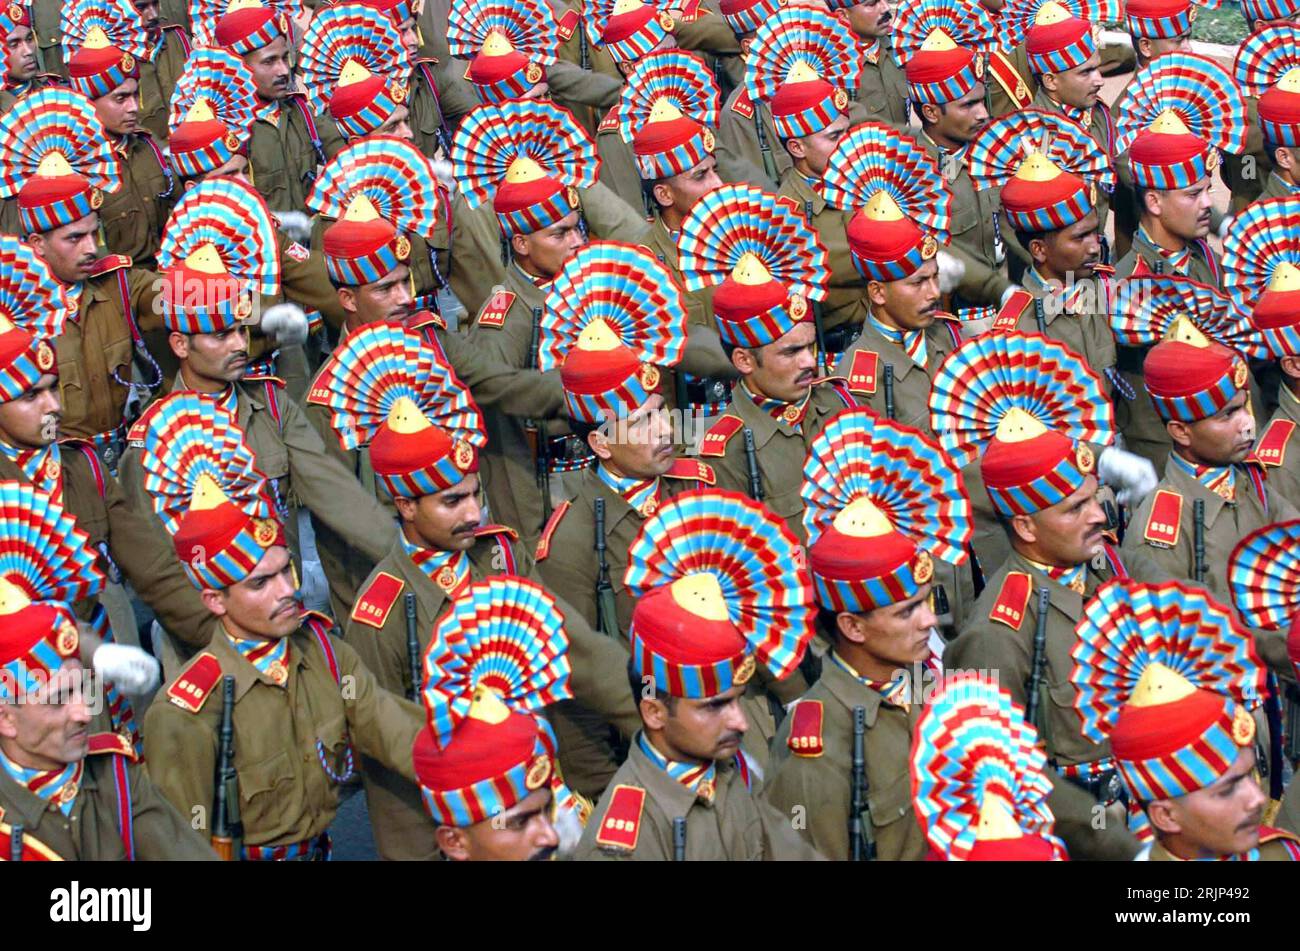 Bildnummer: 51084186 Datum: 18.01.2006 Copyright: imago/Xinhua Indische Soldaten marschieren während einer Probe für die Feierlichkeiten zum 57. Jahrestag der Unabhängigkeit in Neu Delhi - PUBLICATIONxNOTxINxCHN, Personen; 2006, Neu Delhi, Jahrestag, Jahrestage, Unabhängigkeitstag, Tag der Republik, Nationalfeiertag, Feier, Feiern, Jubiläum, Jubiläen, Militärparade, Militärparaden, Parade, Paraden, Soldaten, Soldat, Armee, Armeen, marschiert, marschierend, Marsch, indische, , quer, Kbdig, totale, Indien, , Militaer, Staat, Foto Stock